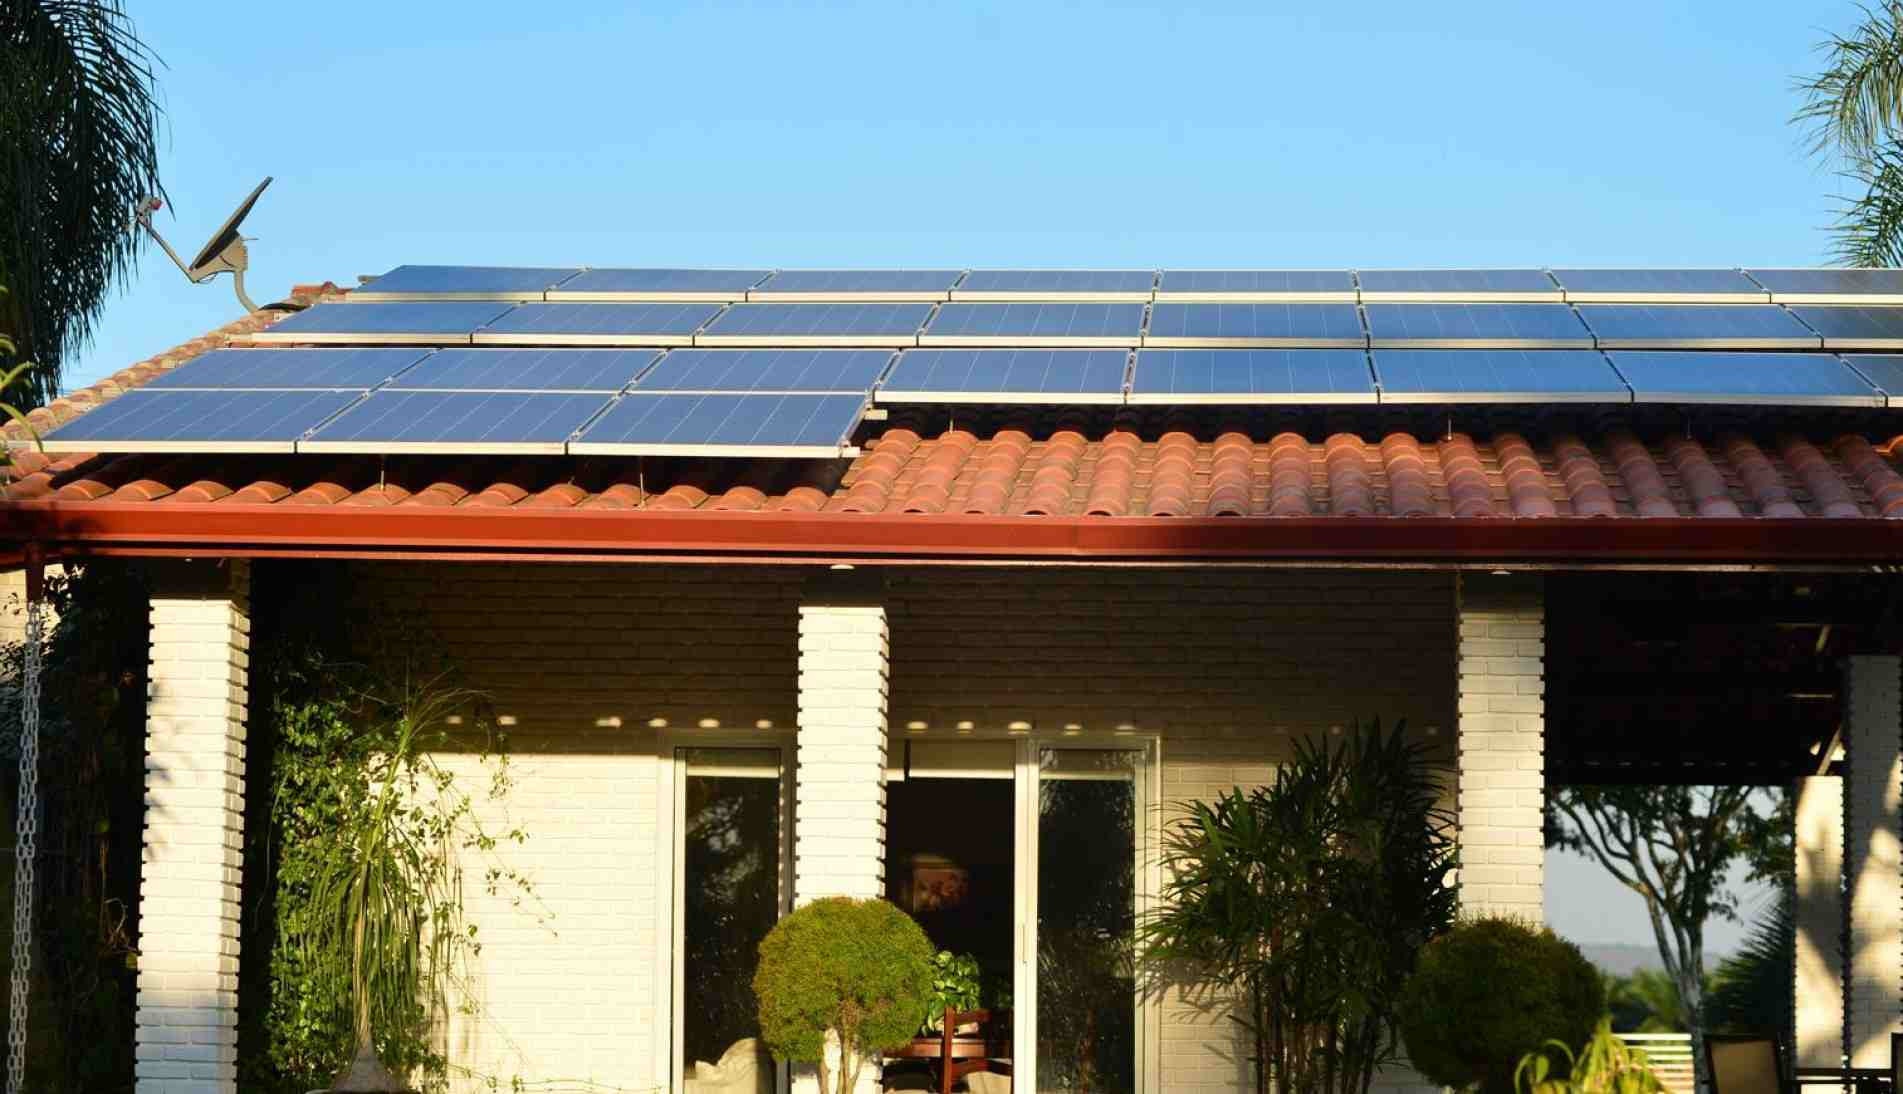 Eletricidade é produzida nas casas com painéis fotovoltaicos.